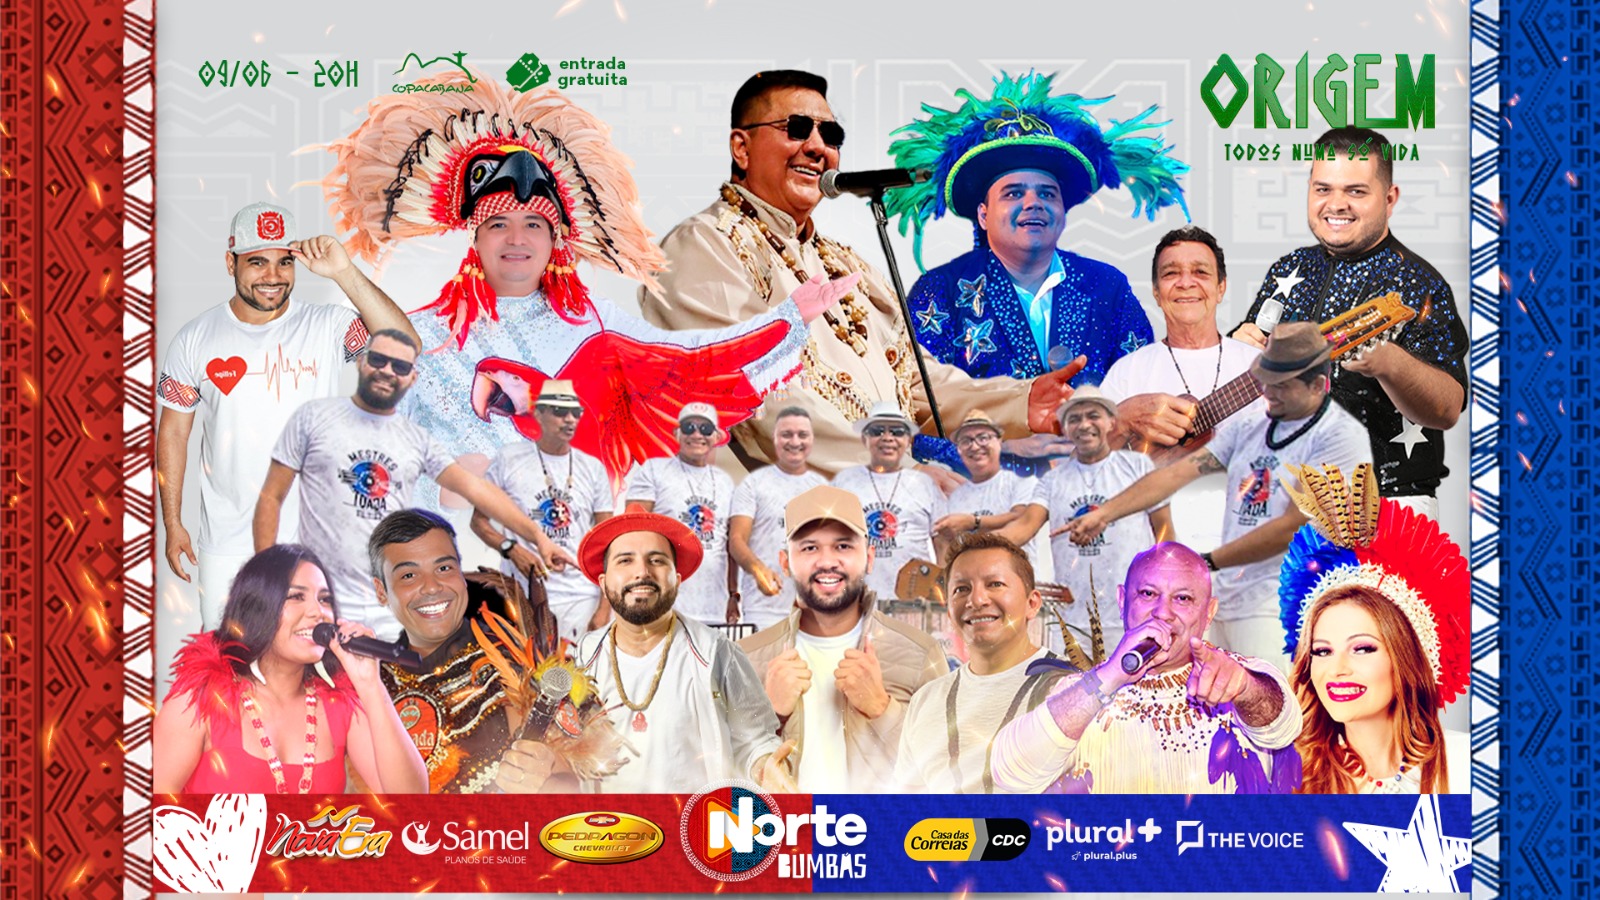 O Festival Norte Bumbás acontece dia 09 de junho, às 20h - Foto: Divulgação